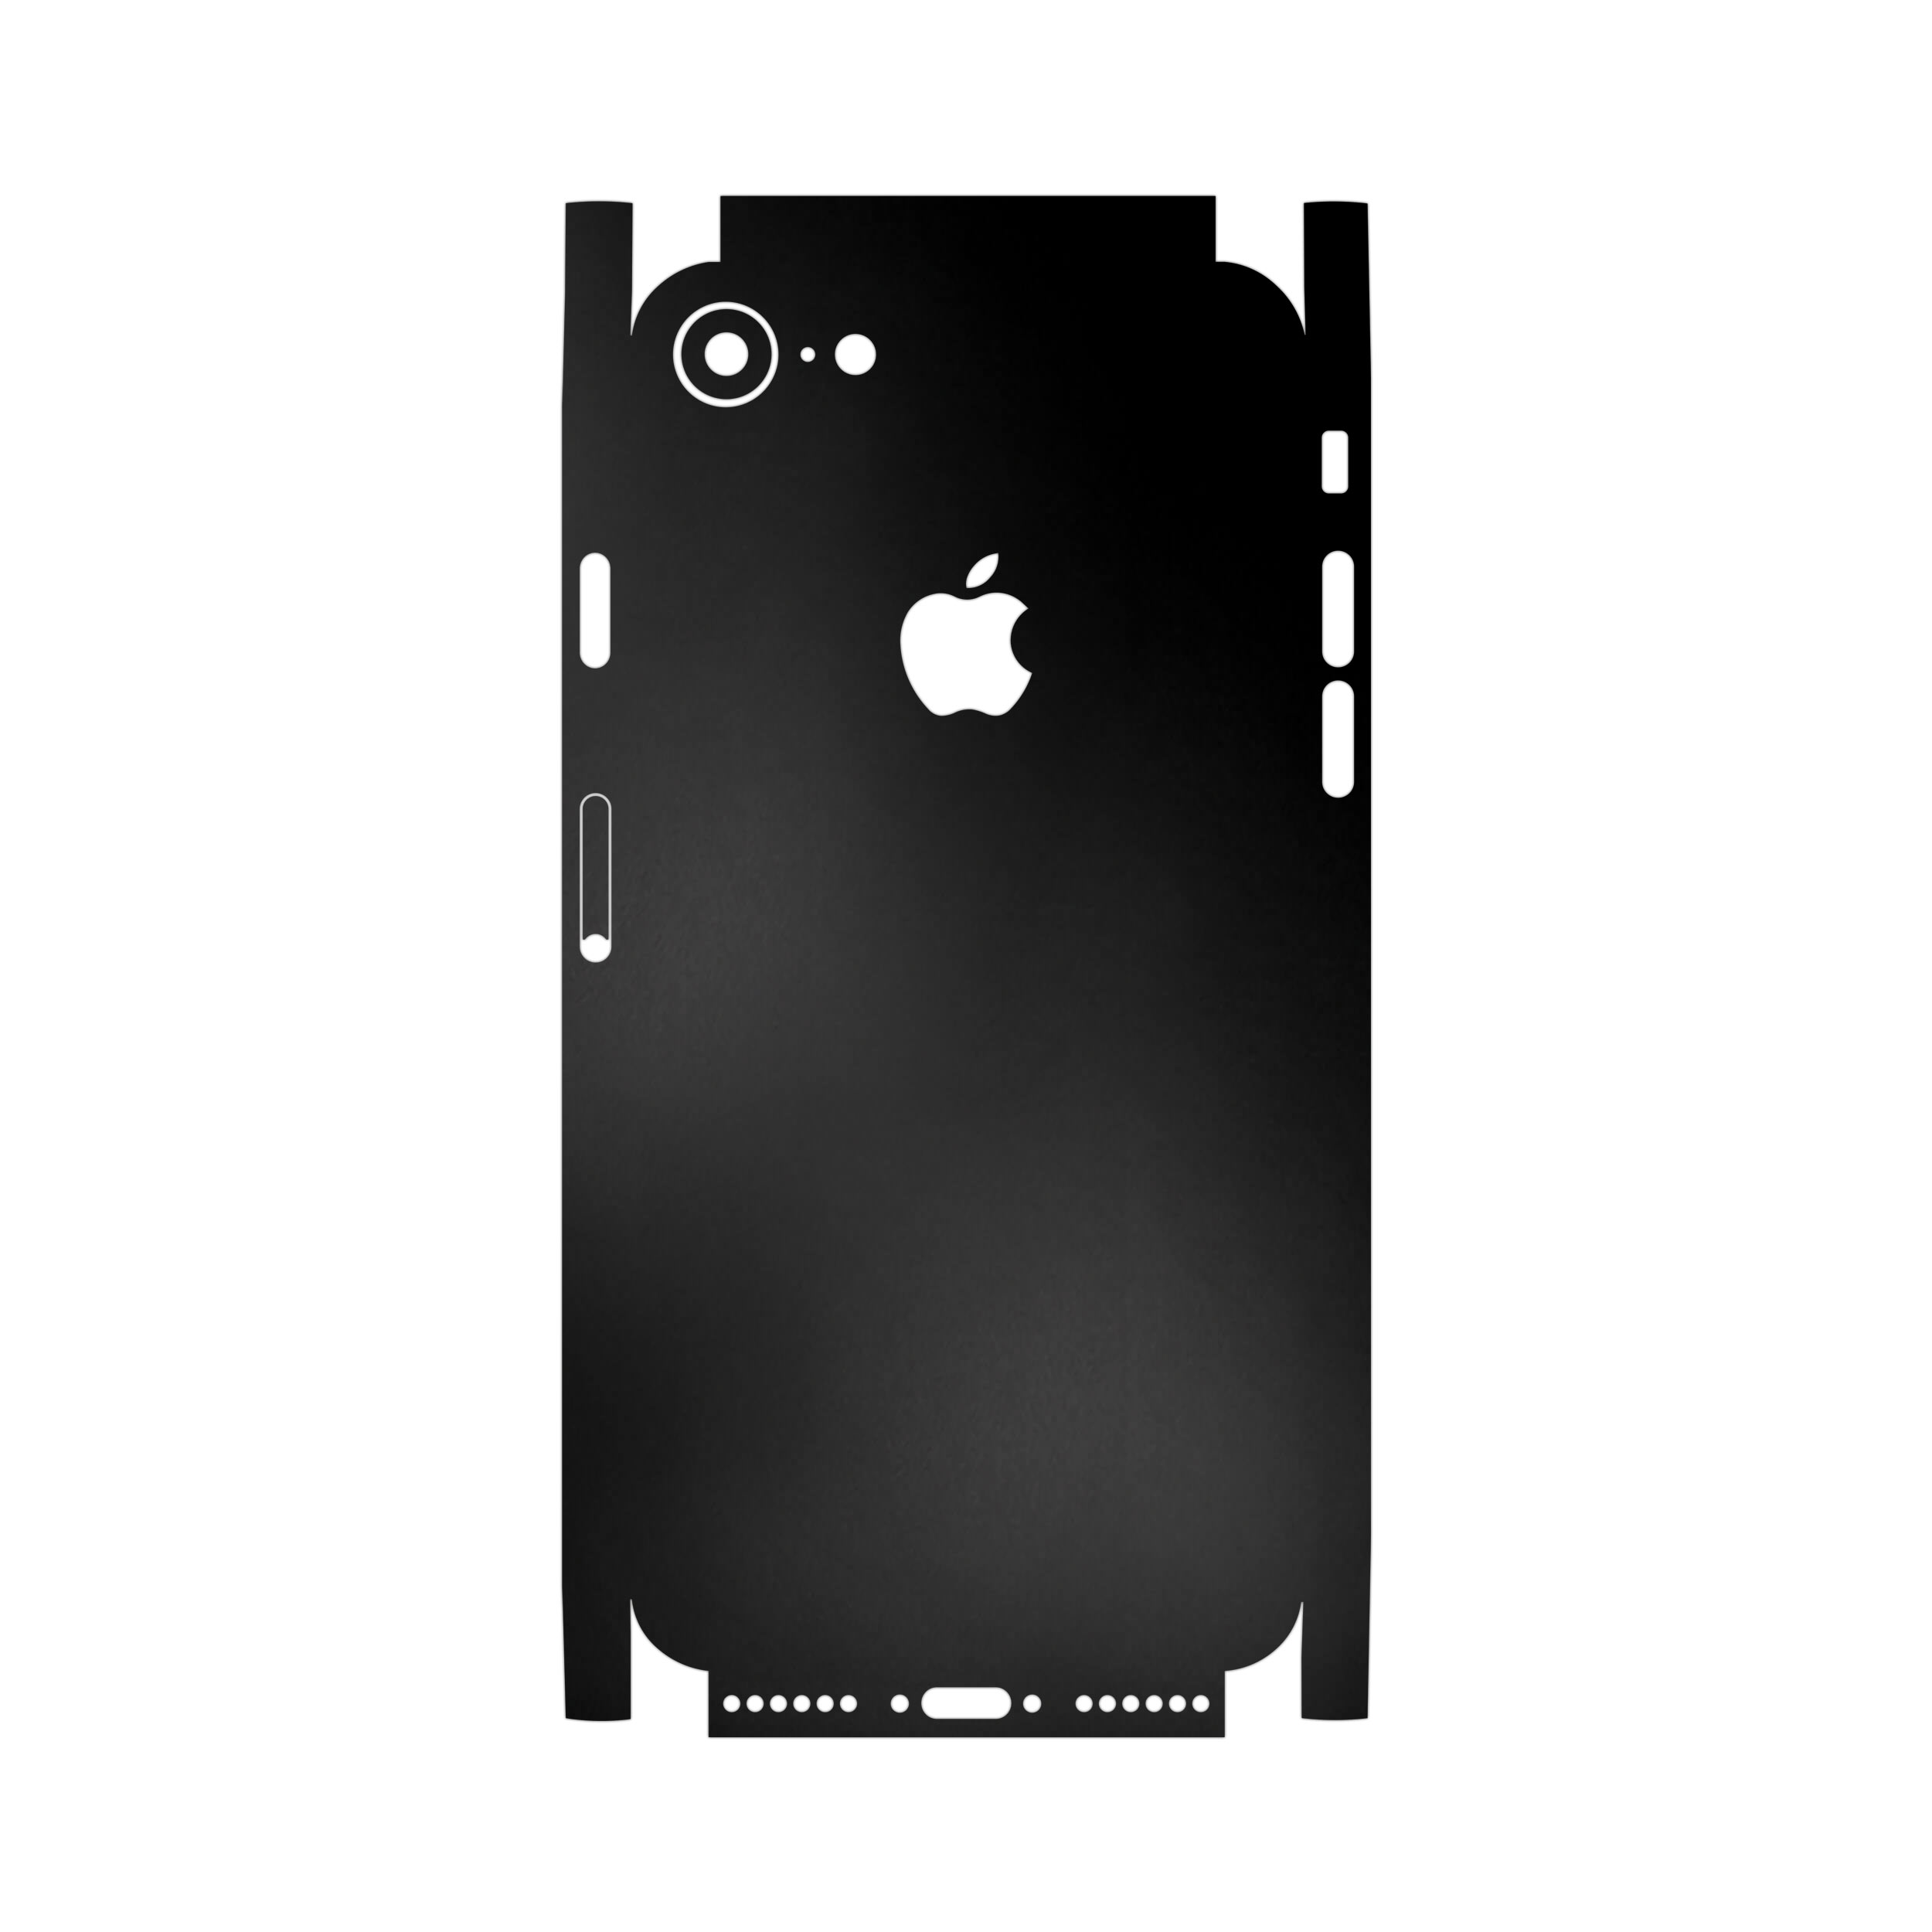 آنباکس برچسب پوششی ماهوت مدل Black-Matte-FullSkin مناسب برای گوشی موبایل اپل iPhone 7 توسط طاها خدیجی در تاریخ ۲۷ تیر ۱۴۰۰